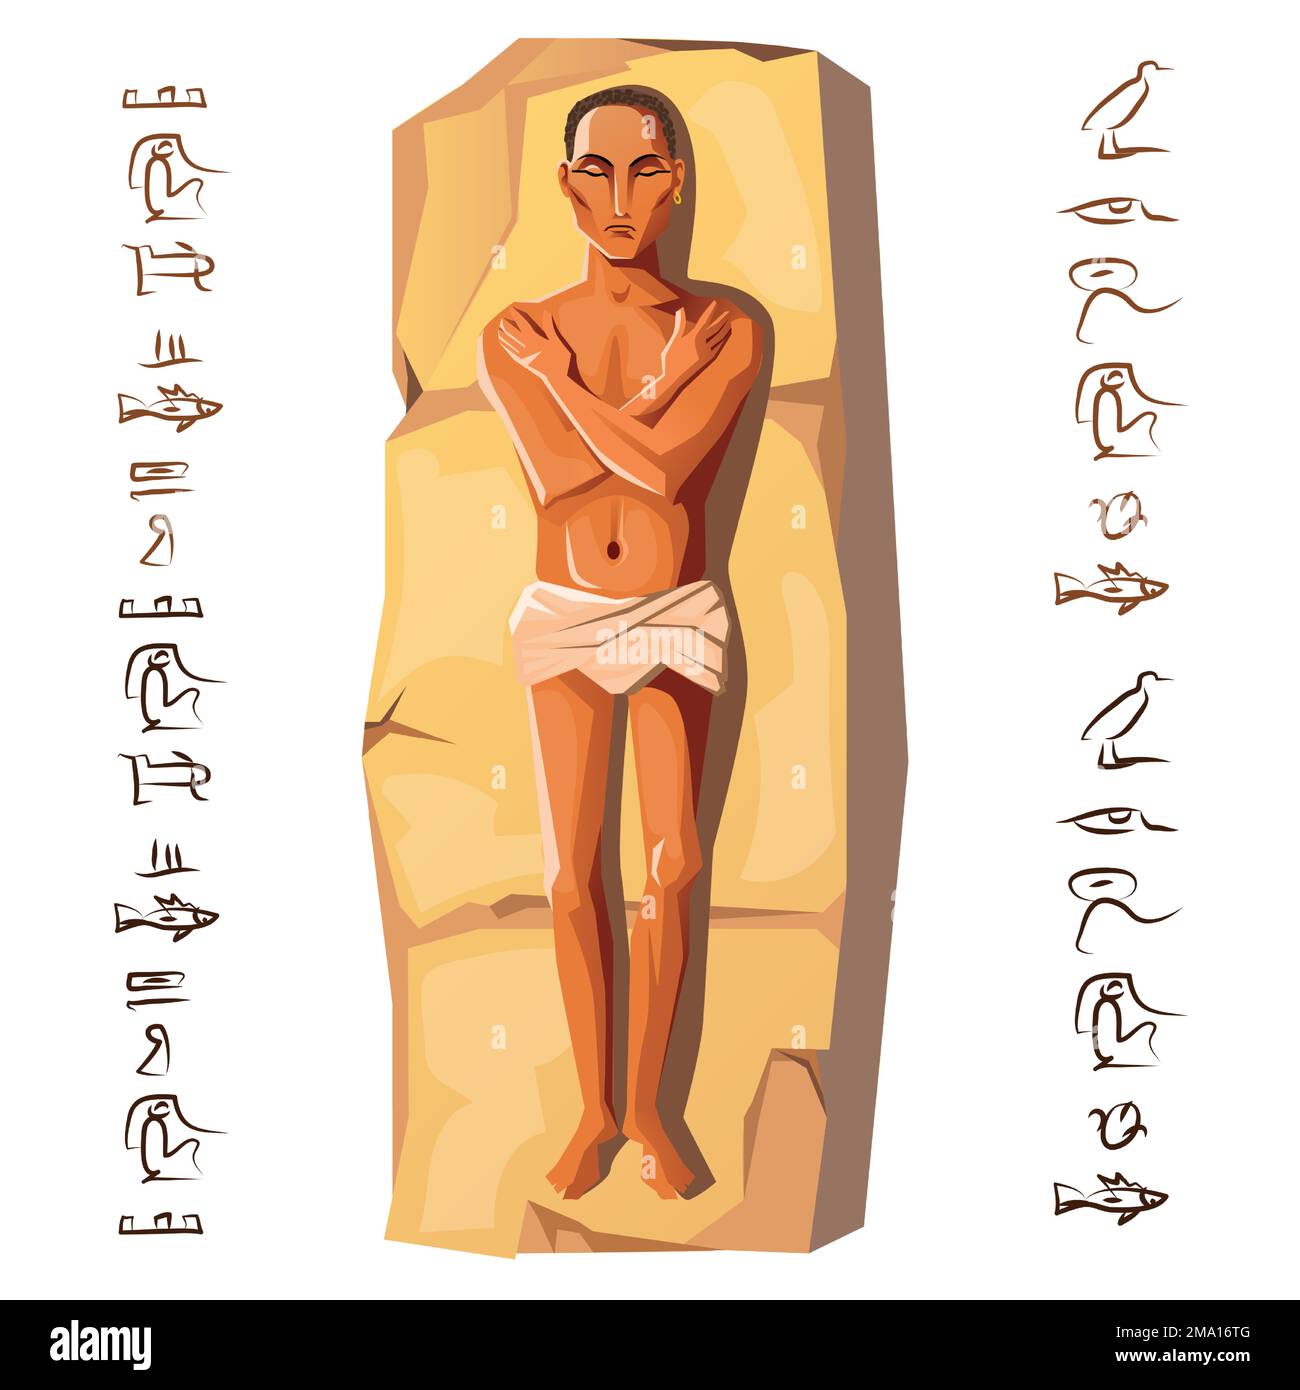 Ägyptische Leiche, Mumifizierungsprozess, erste Phase, Vektorgrafik. Menschliche Leiche mit Händen, Brust liegt auf Stein, isoliert auf weißem Hintergrund. Kult der Toten aus dem alten Ägypten Stock Vektor